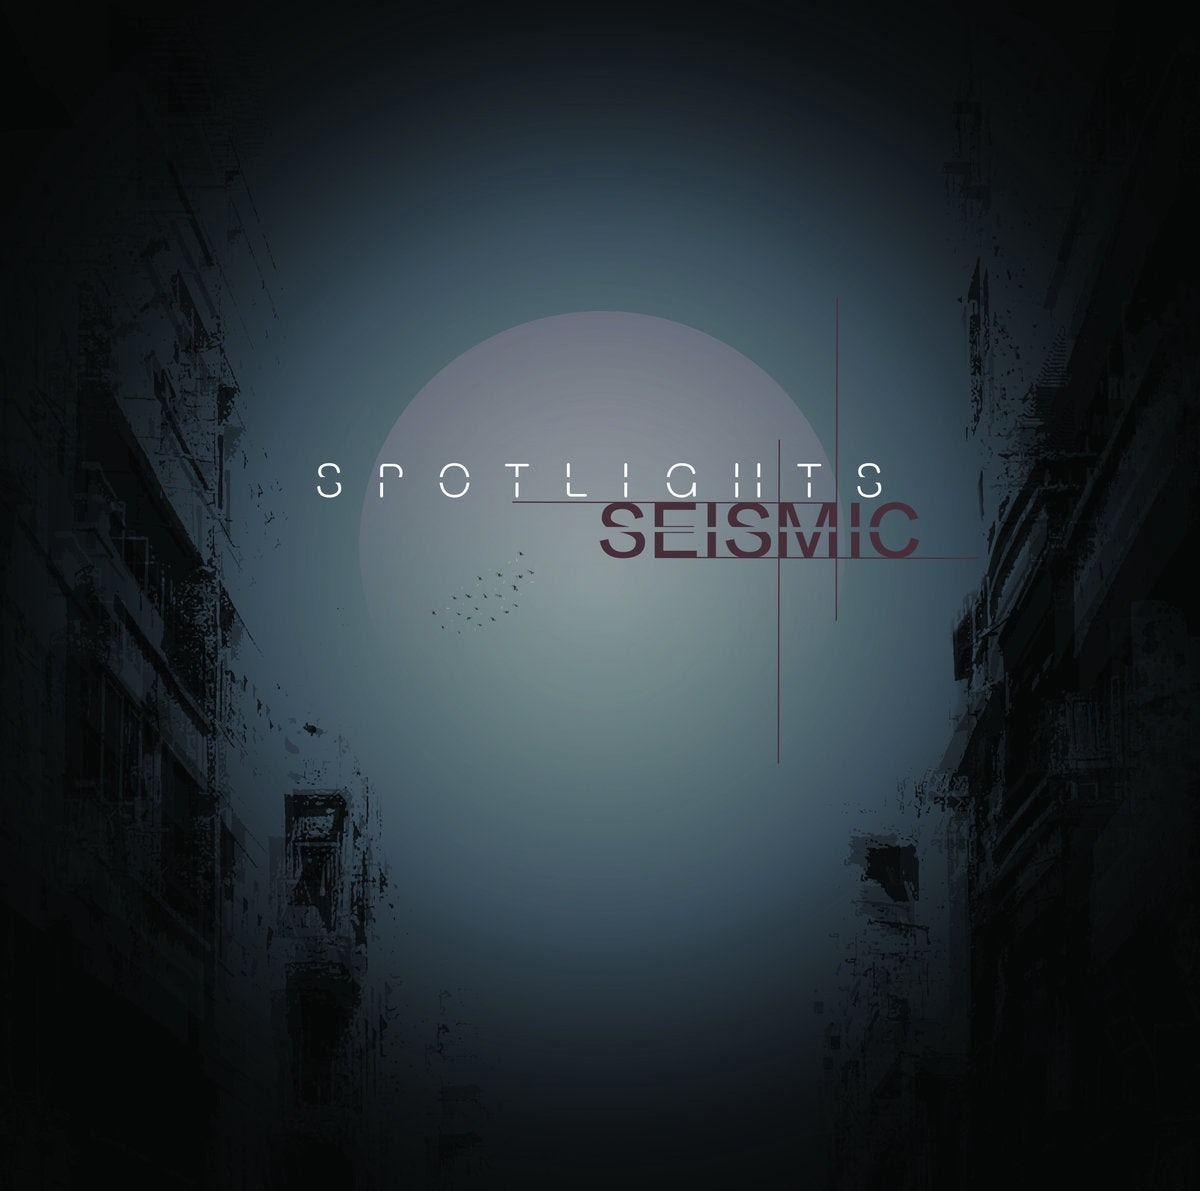 Spotlights - Seismic - New Vinyl Record 2017 Ipecac Records LP + Download - Post-Metal / Post-Rock / Shoegaze